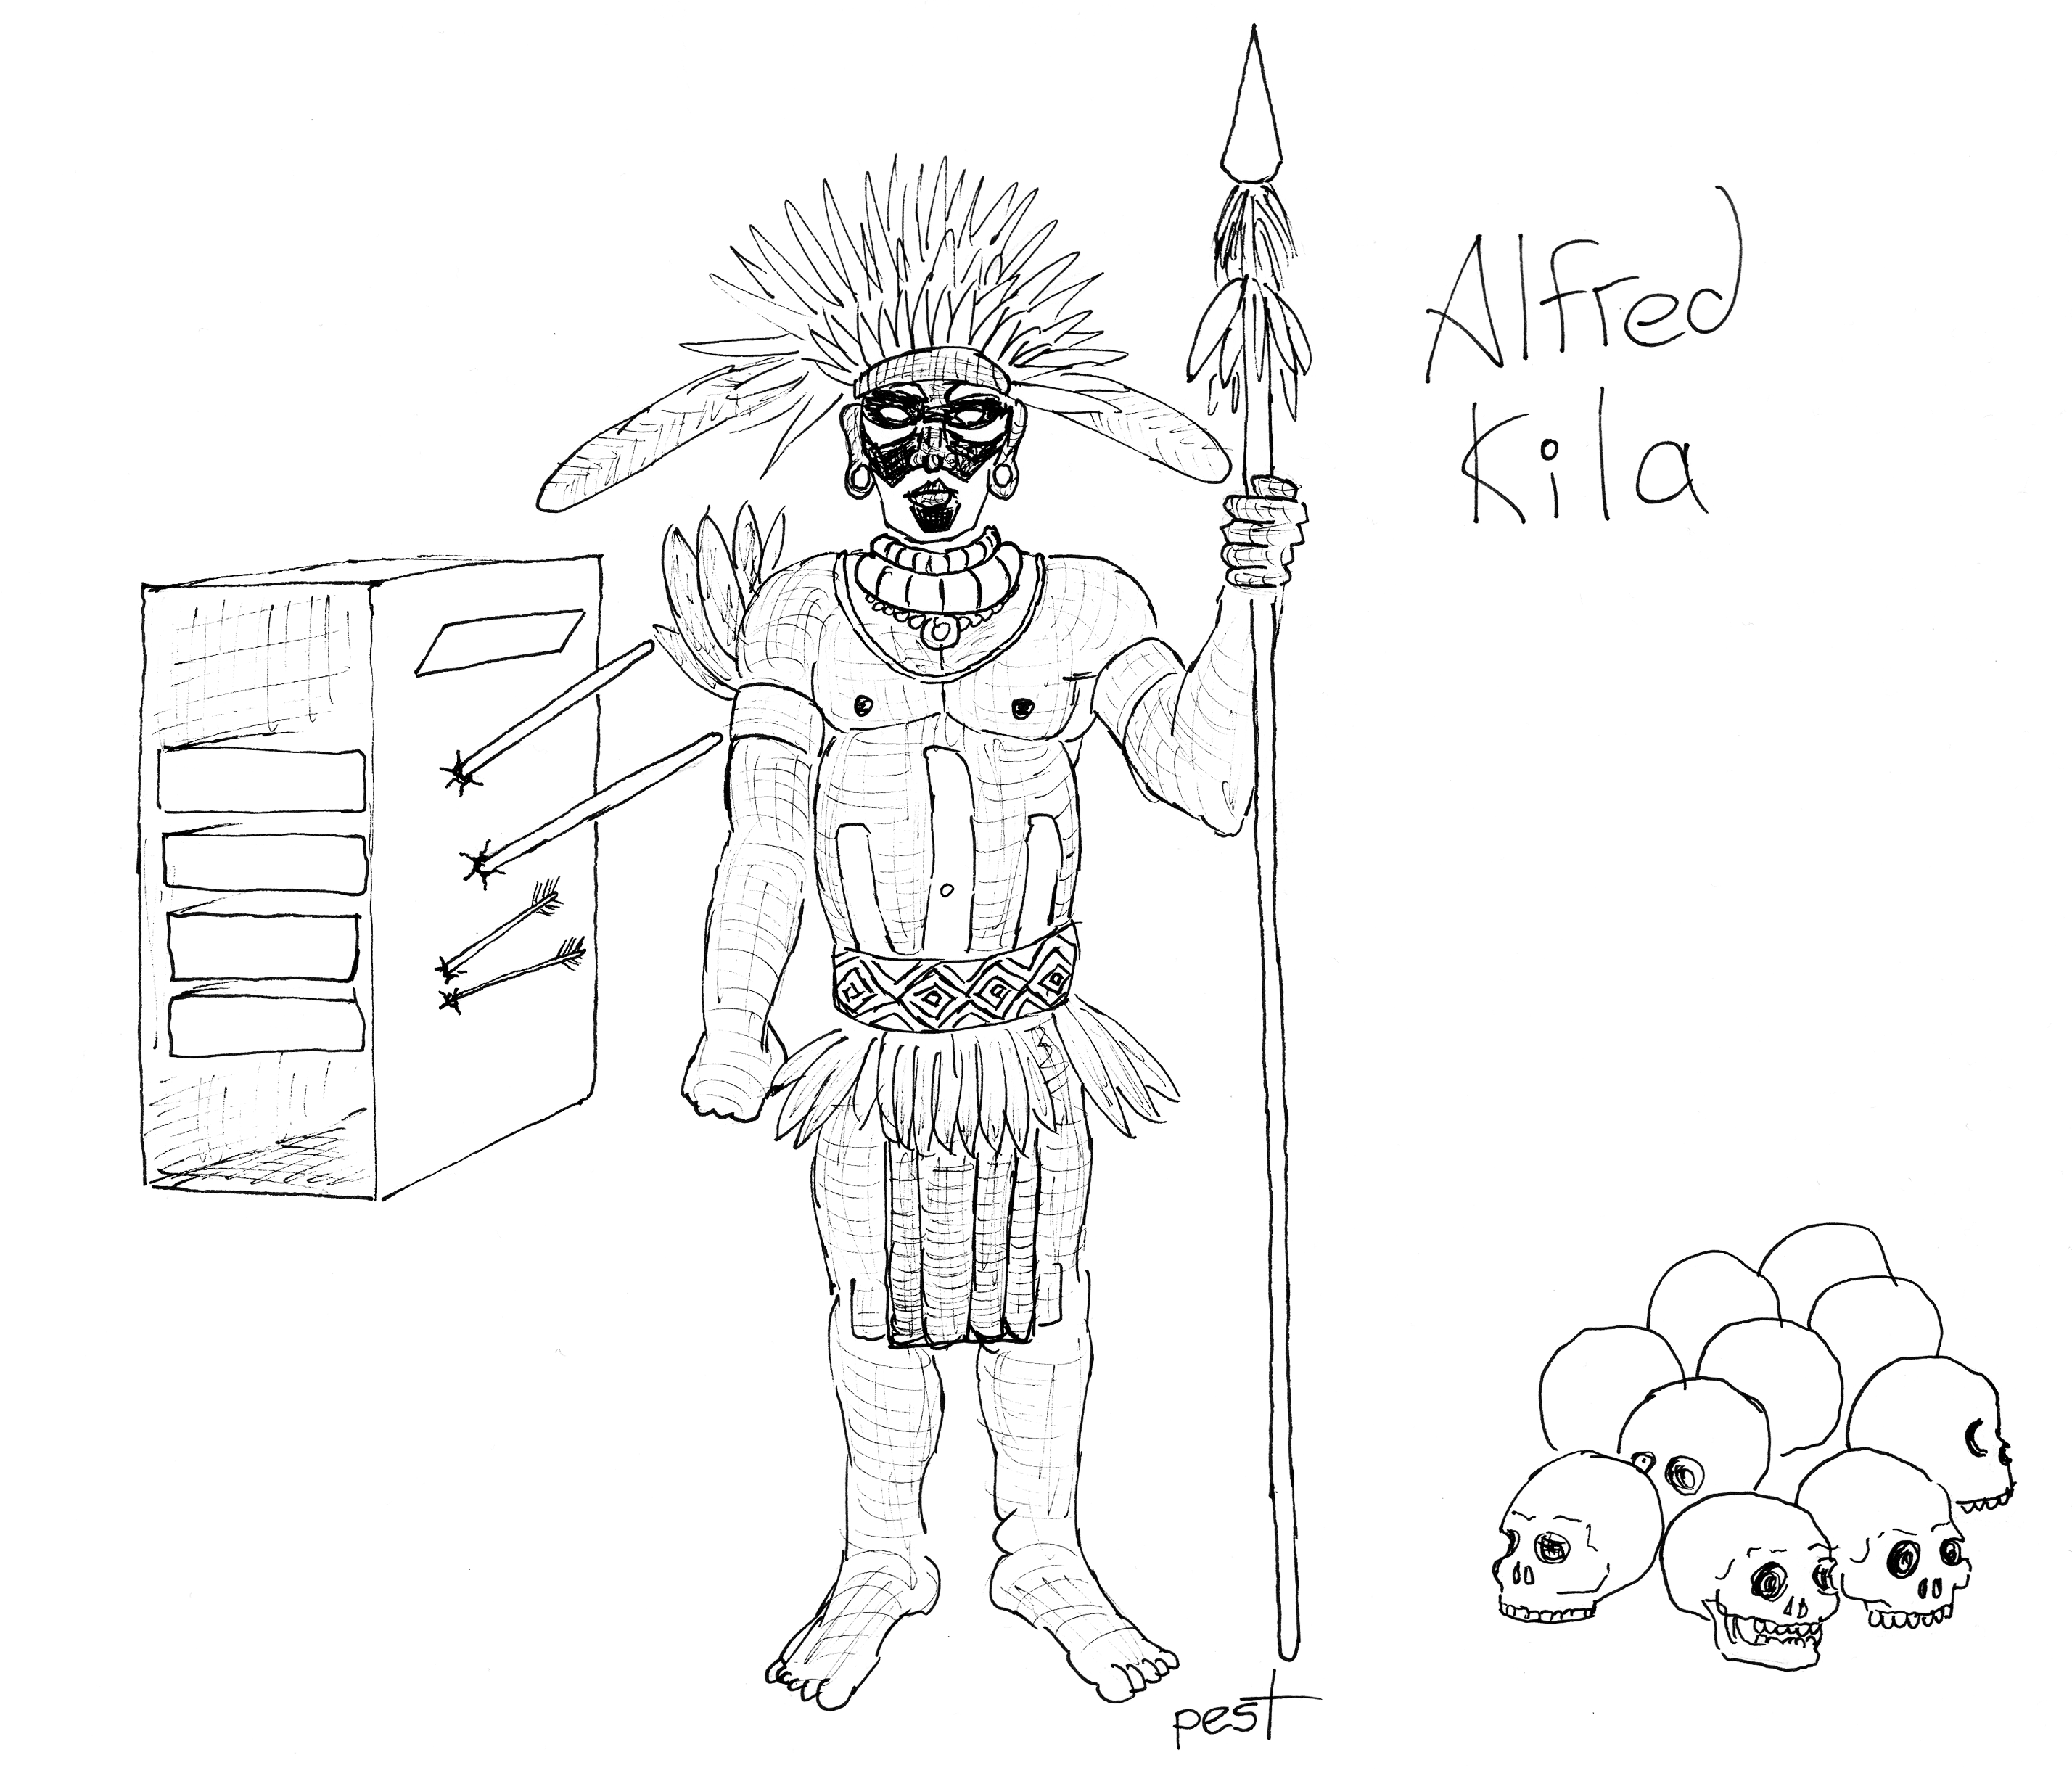 Alfred Kila